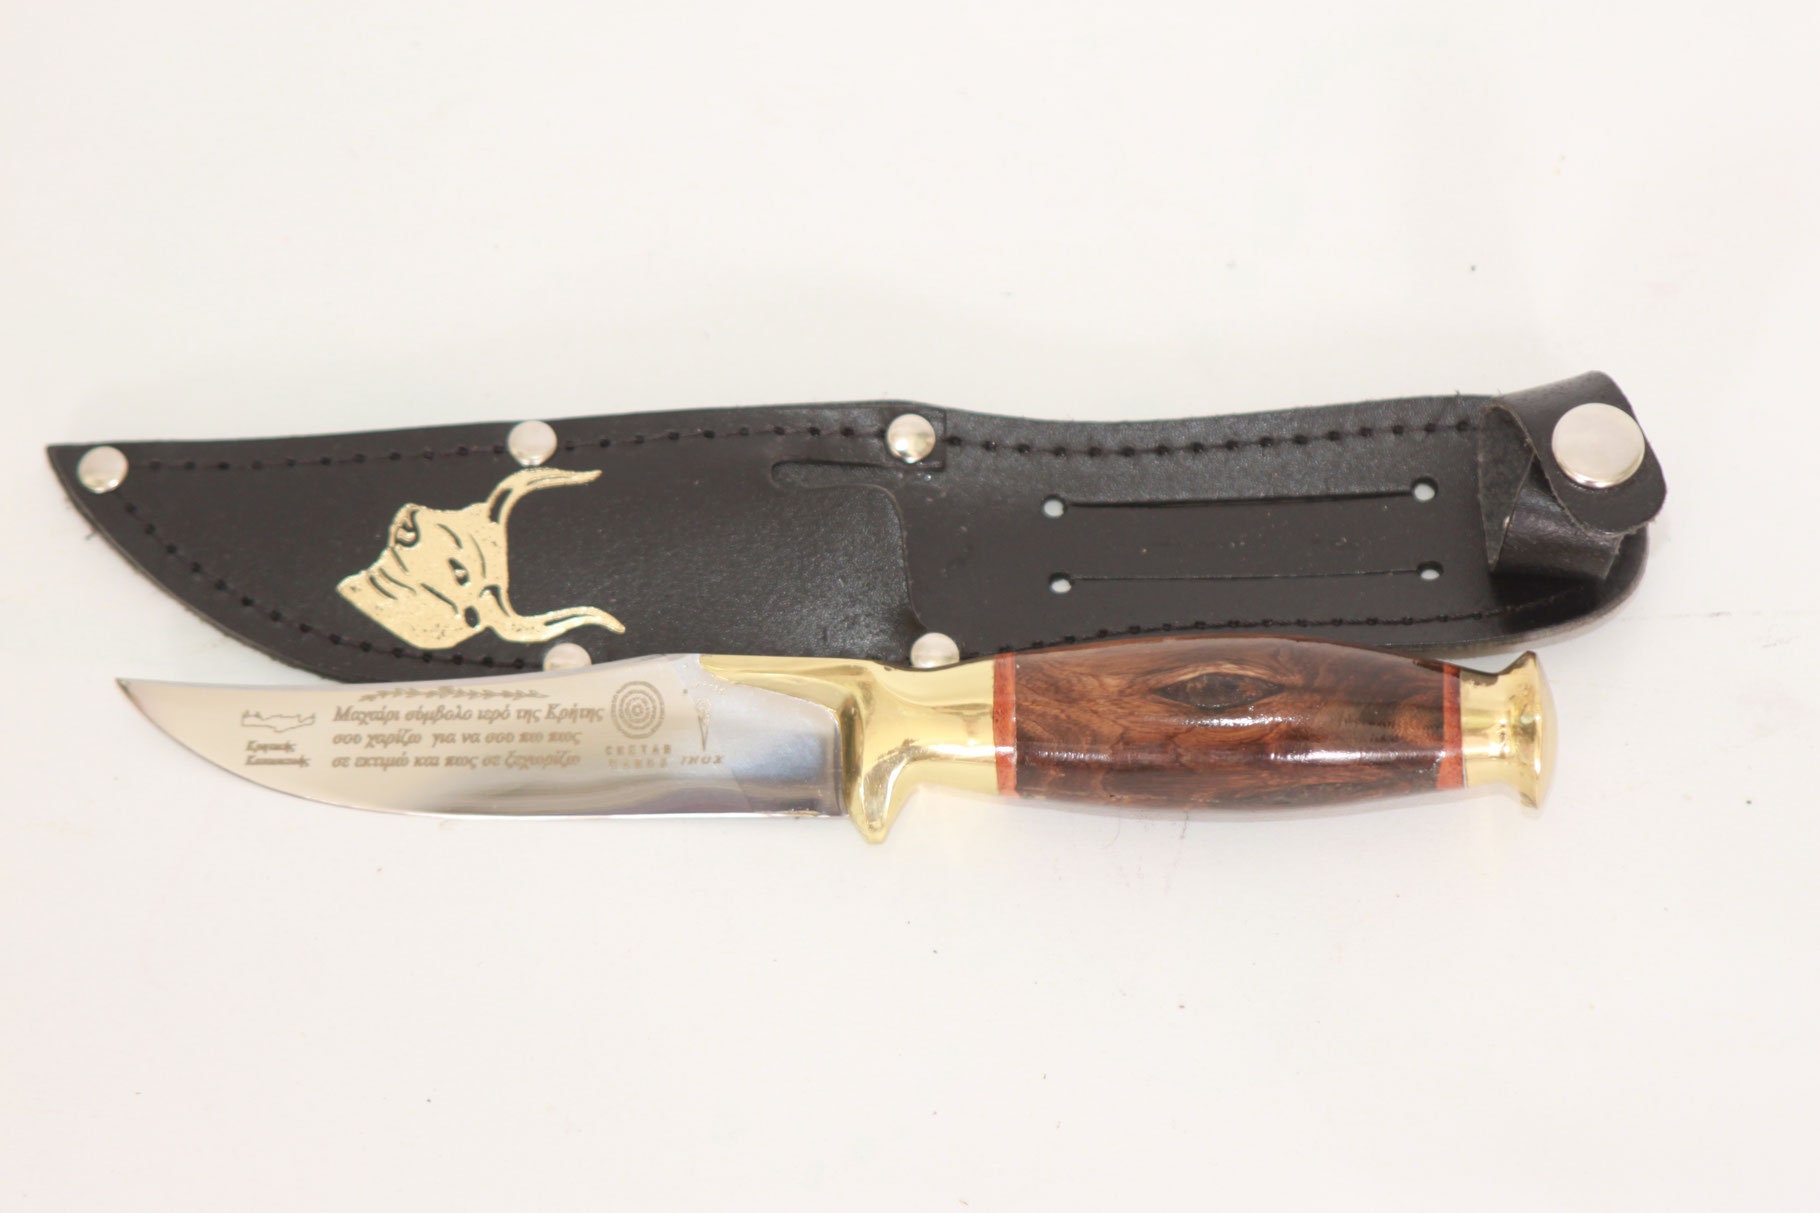 Couteau de chasse - Deerhunter - Etui en cuir - Couteau lame fixe -  Aména'Chasse